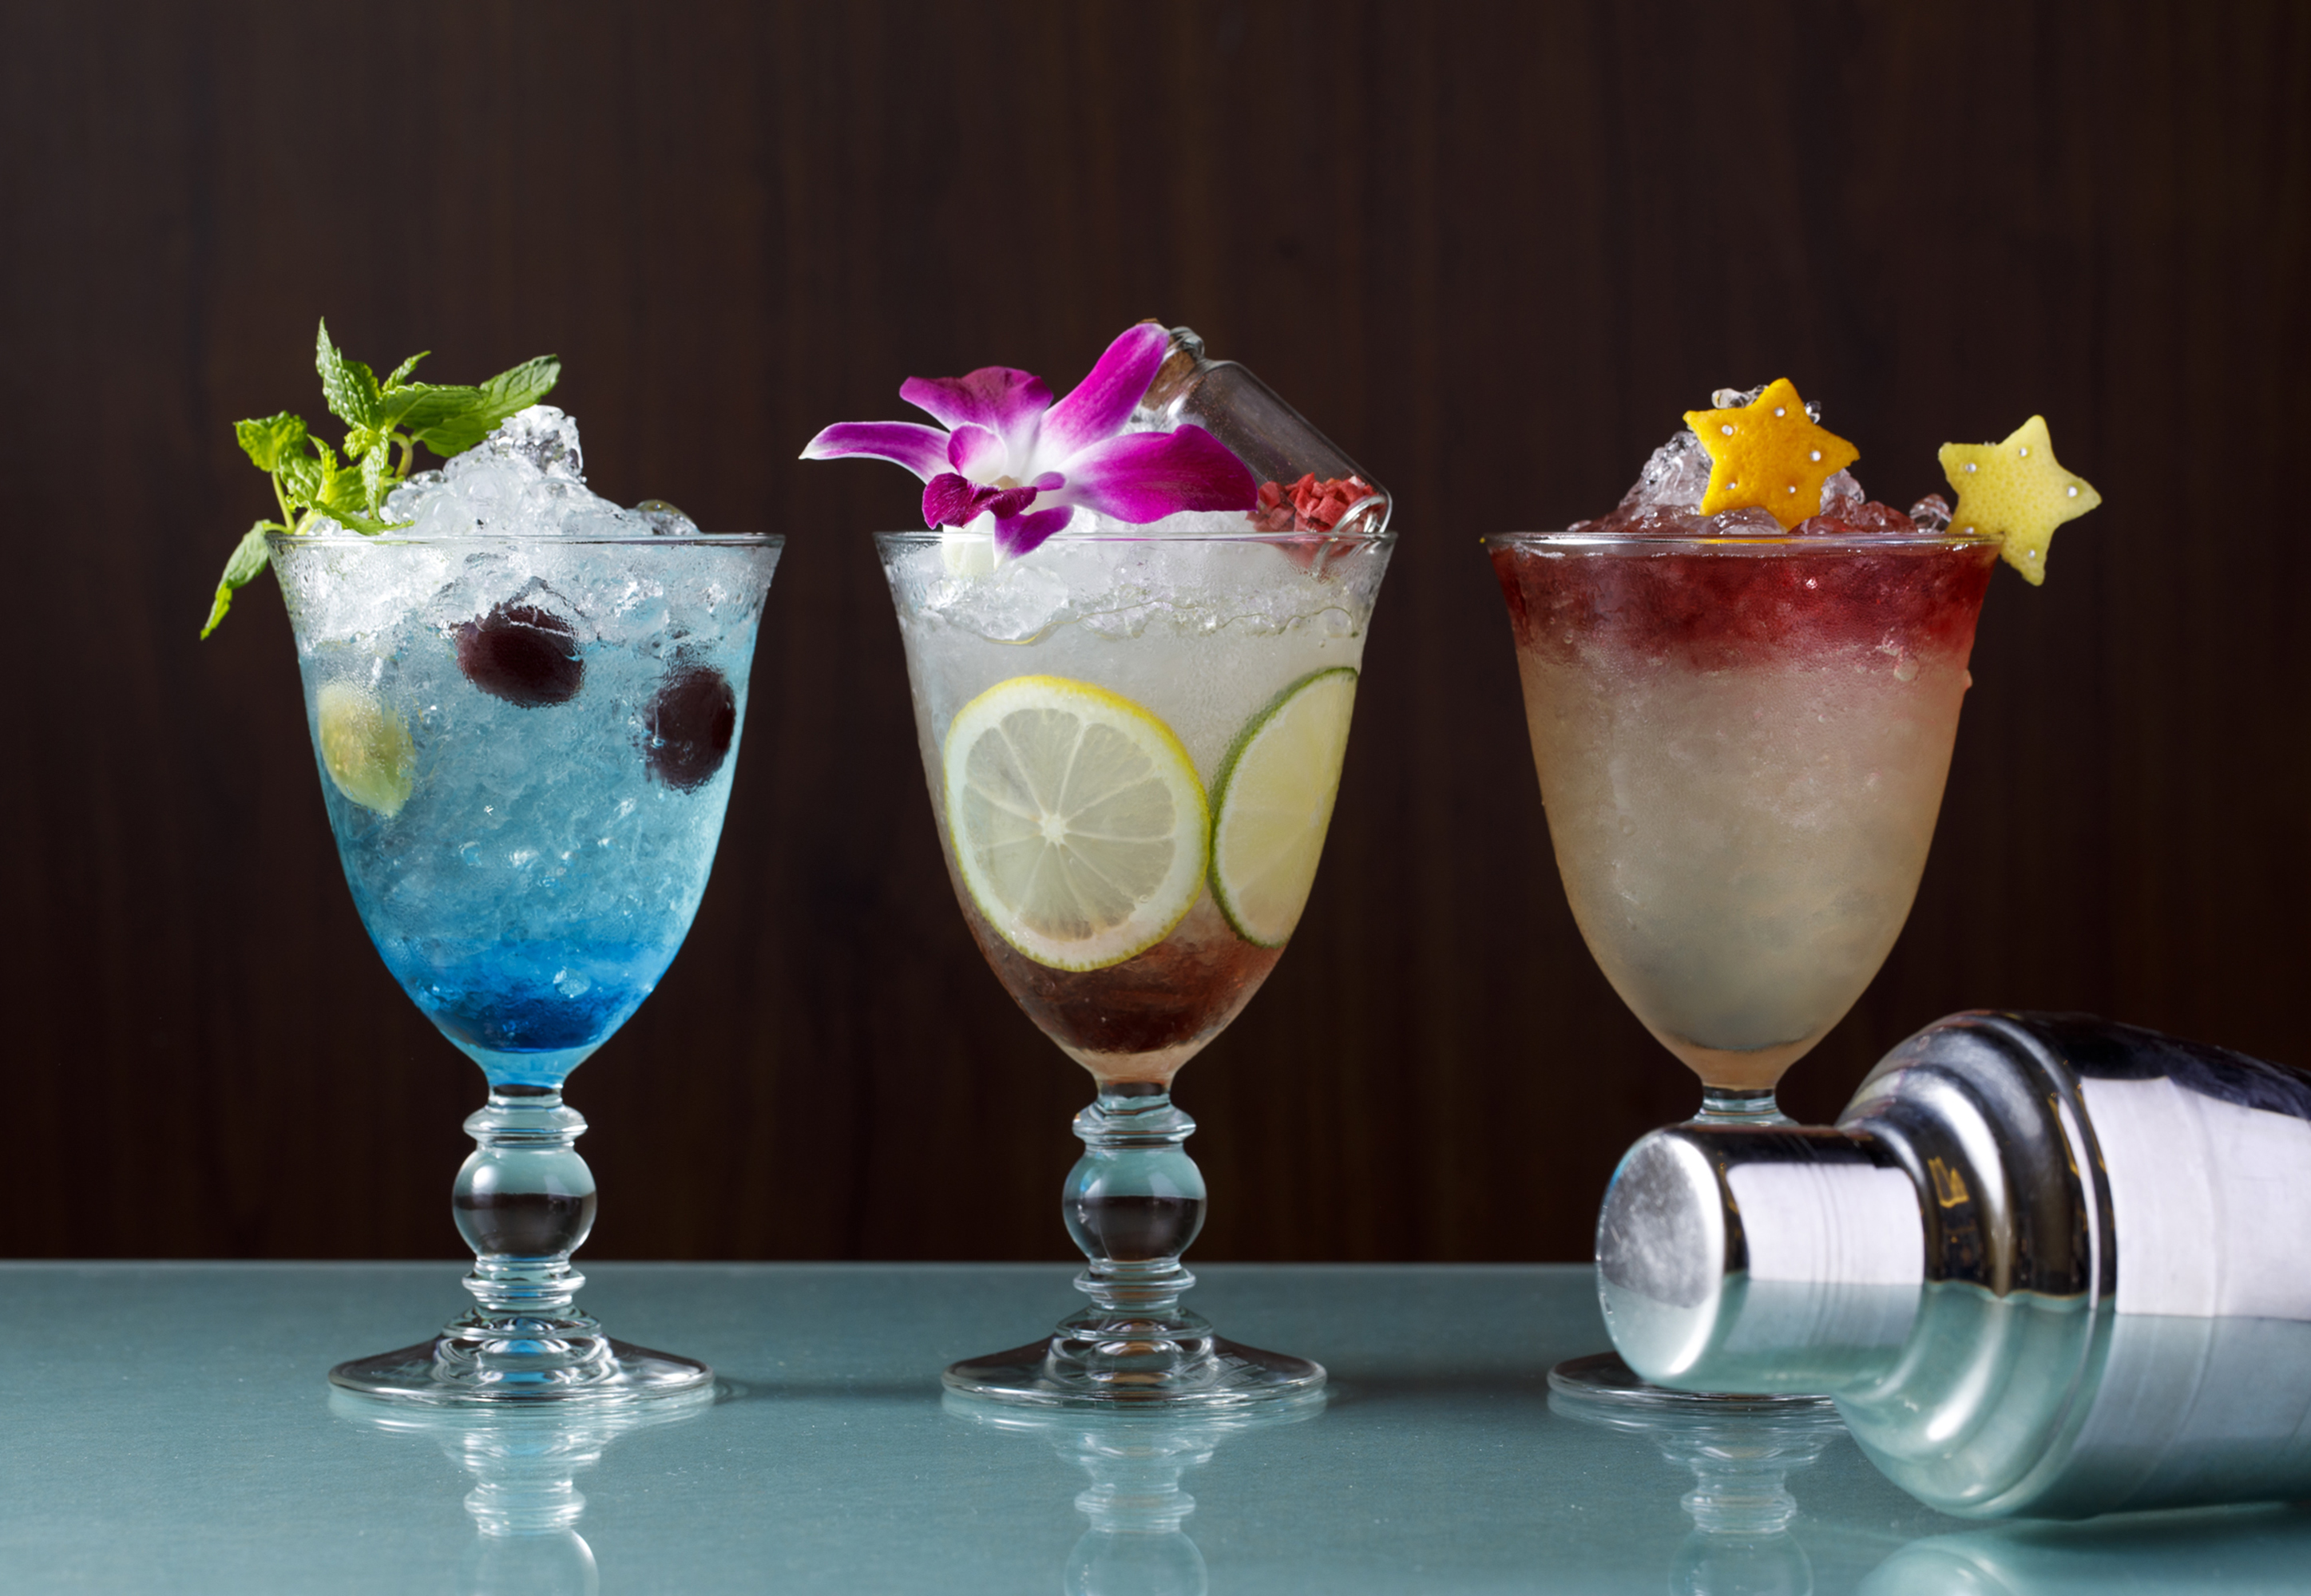 ウェスティンホテル仙台 バーテンダー気分で味わう夏のカクテル モクテル Shake Frappe Cocktail シェイクフラッペカクテル を発売 Newscast